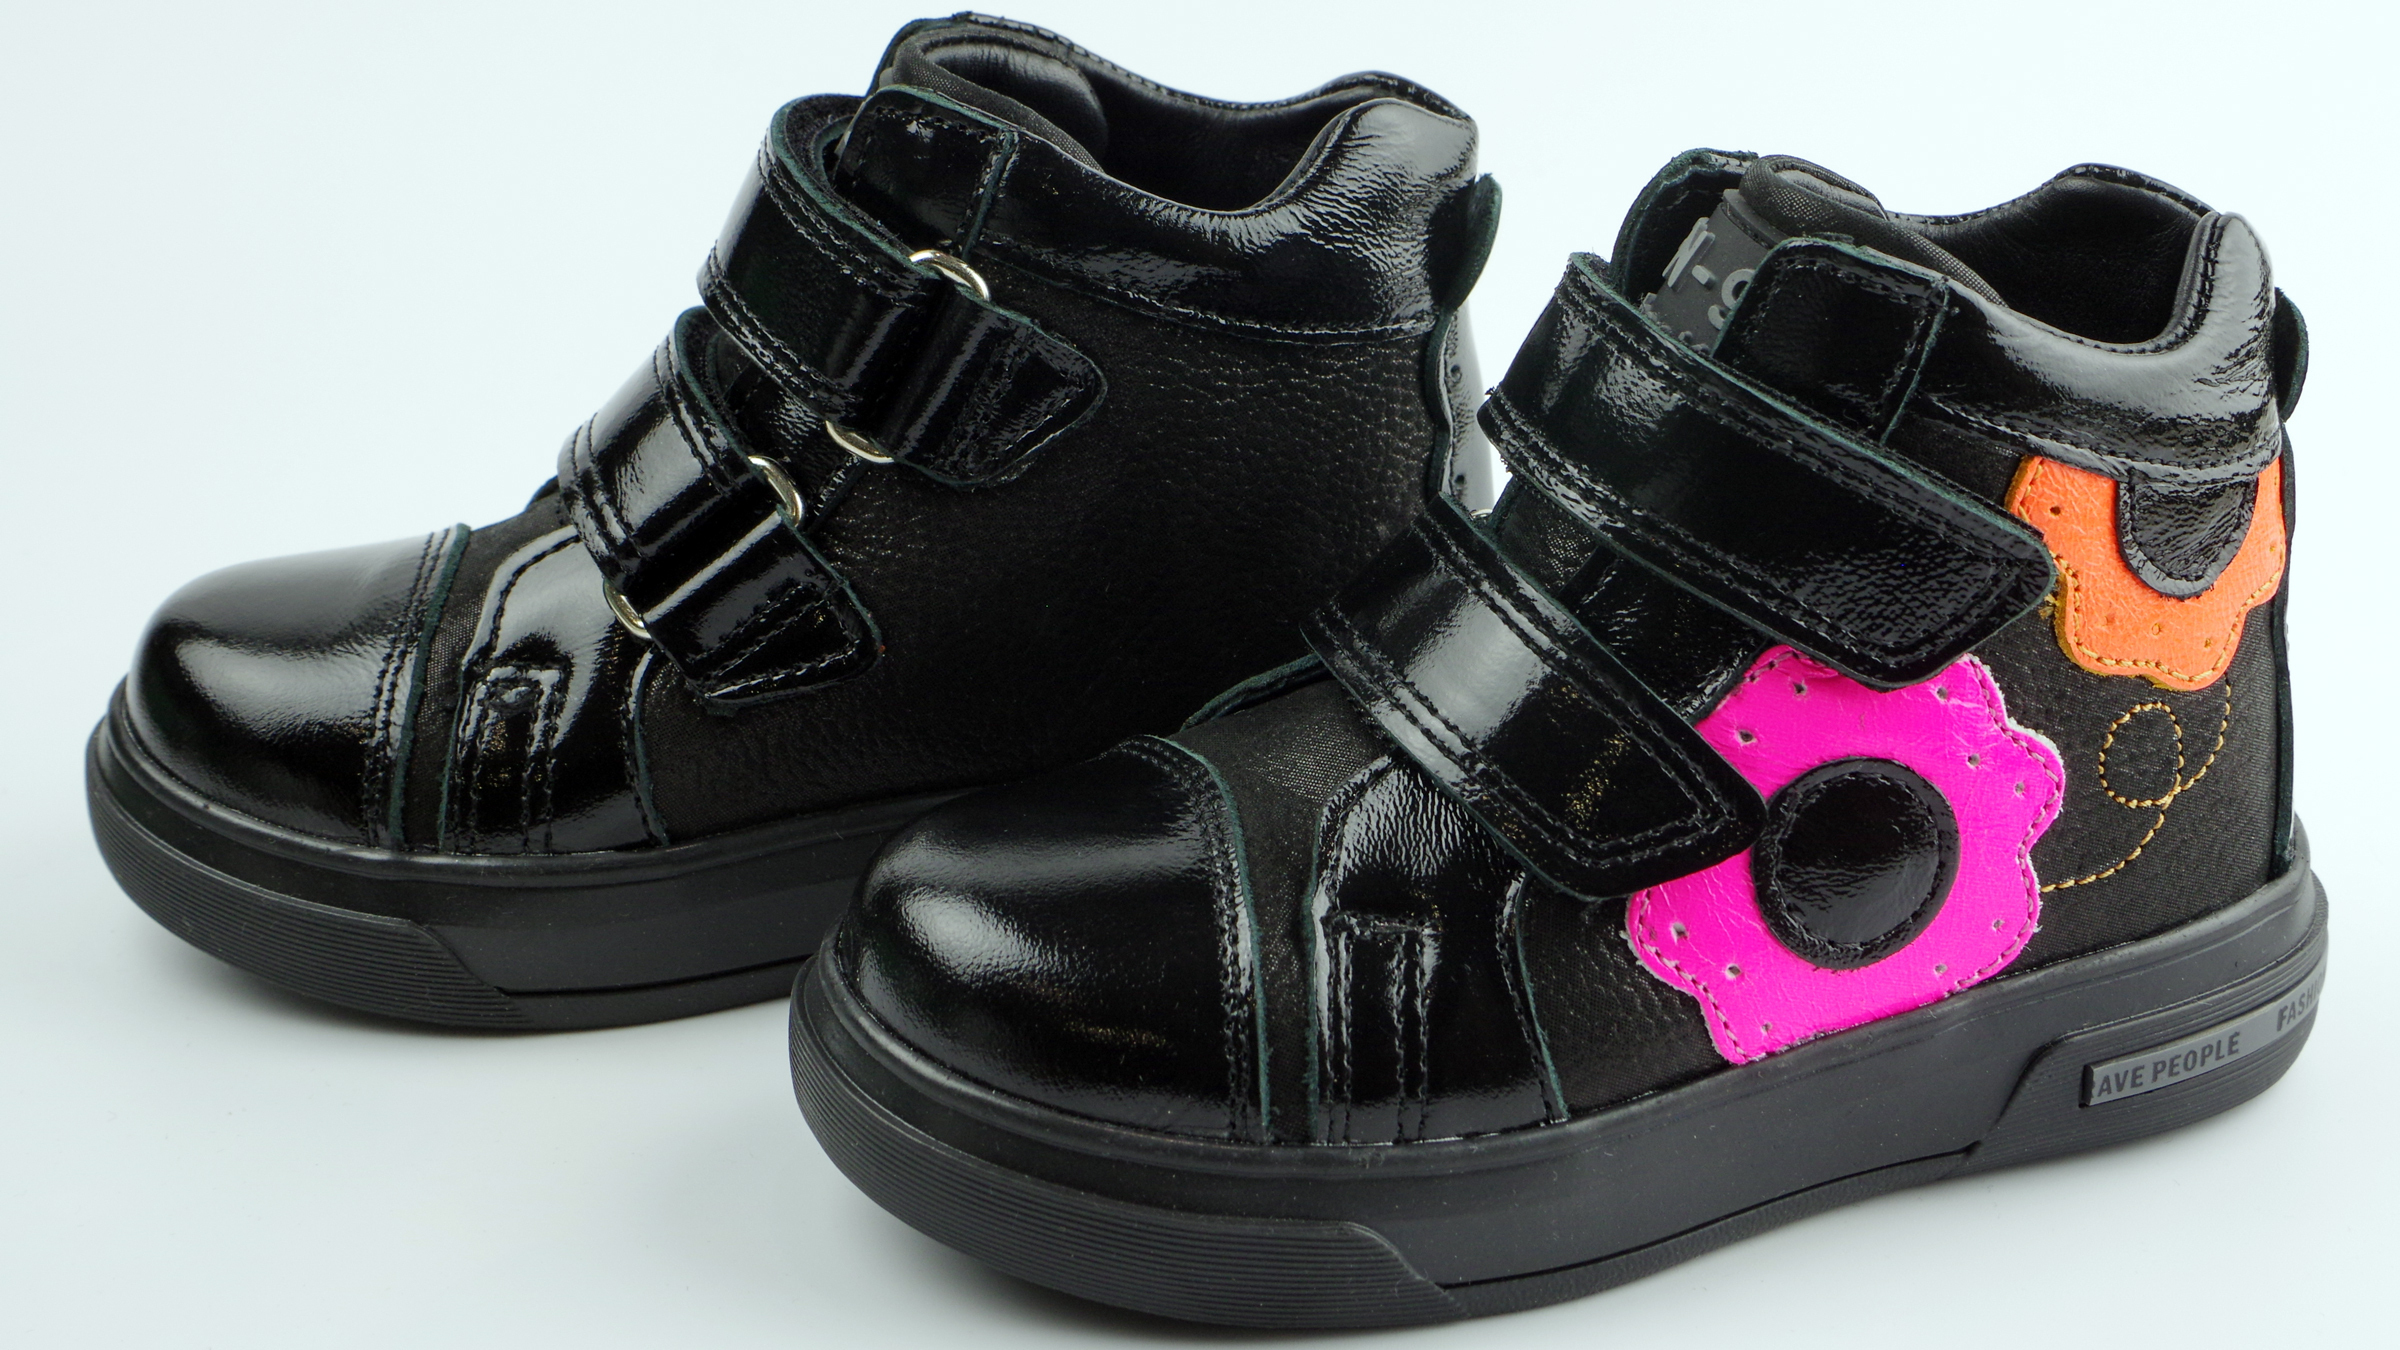 Демисезонные ботинки детские (2137) материал Натуральная кожа, цвет Черный  для девочки 21-25 размеры – Sole Kids. Фото 4